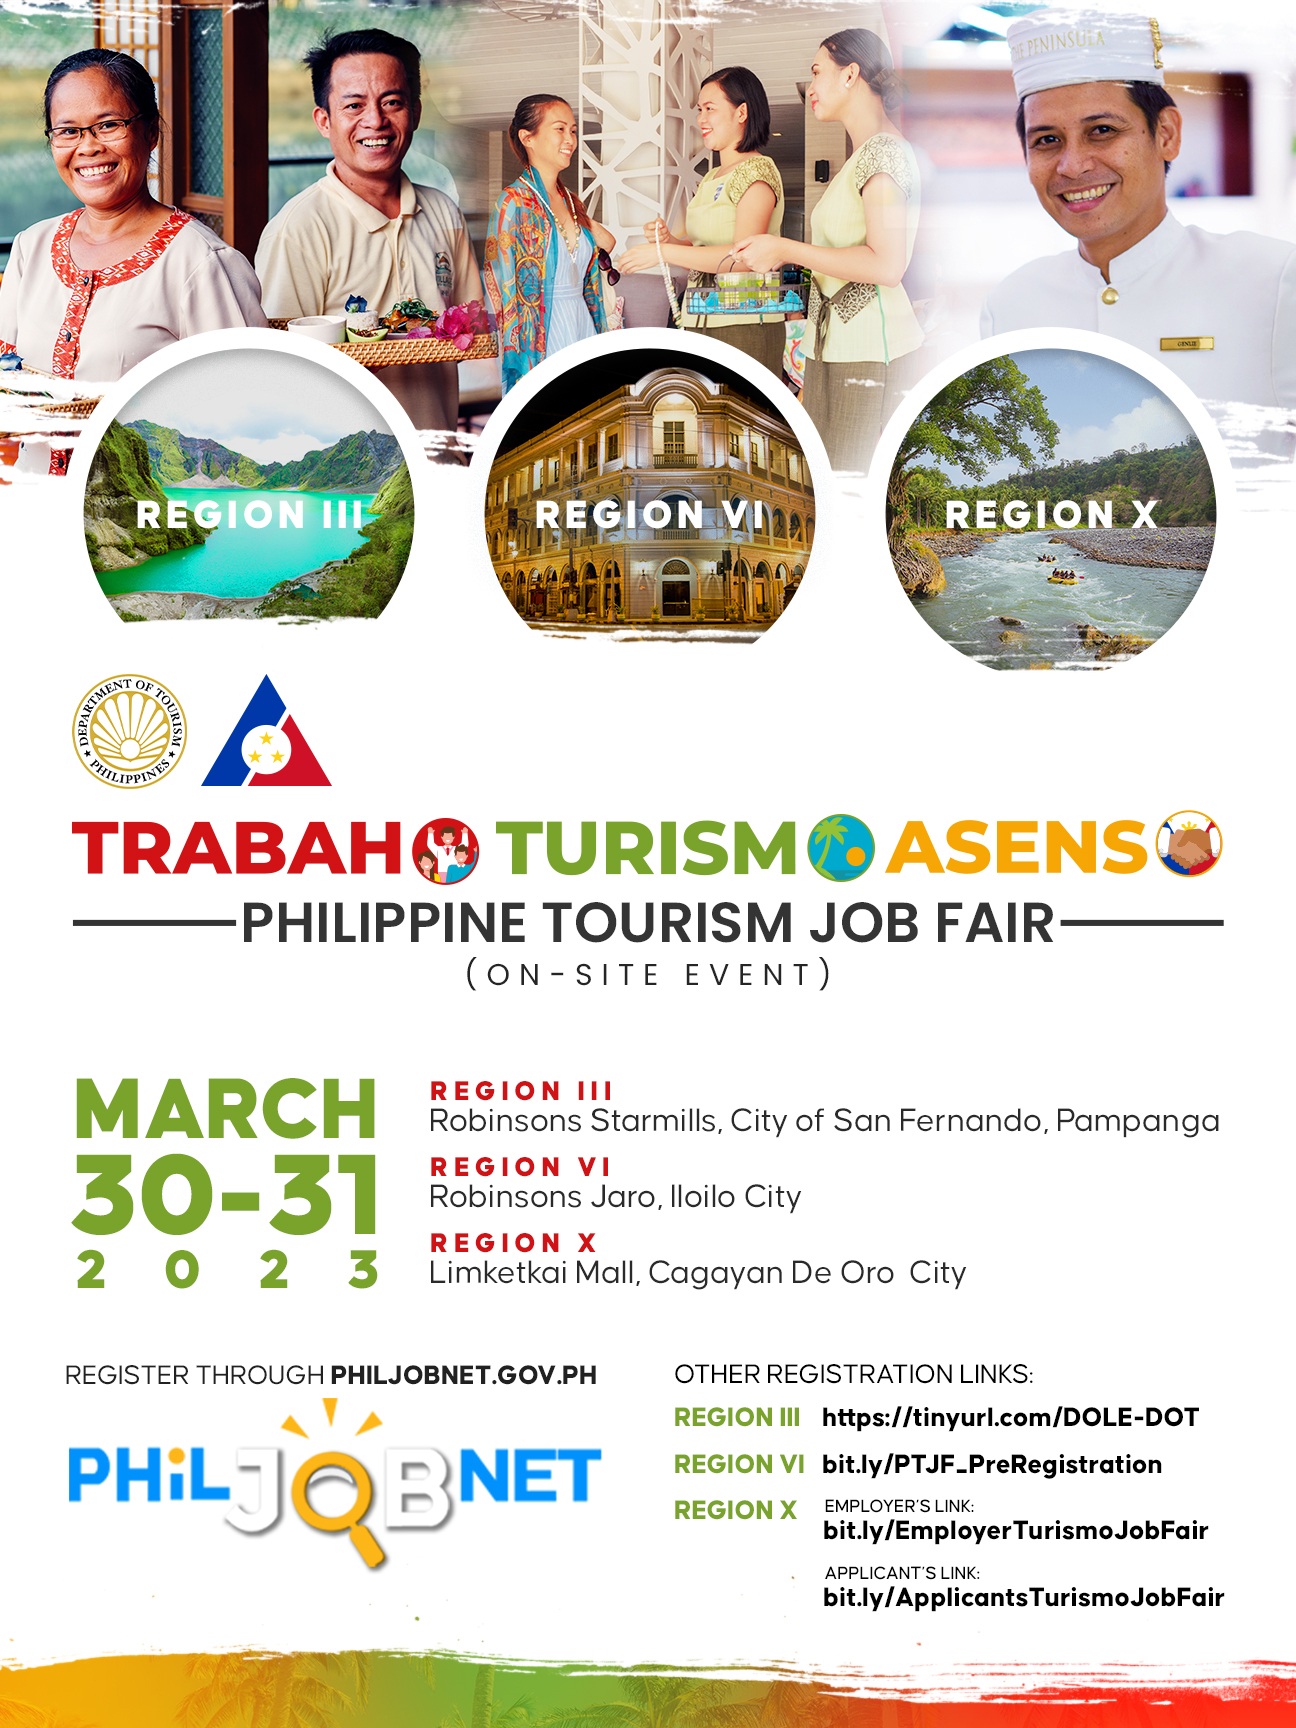 tourism career fair